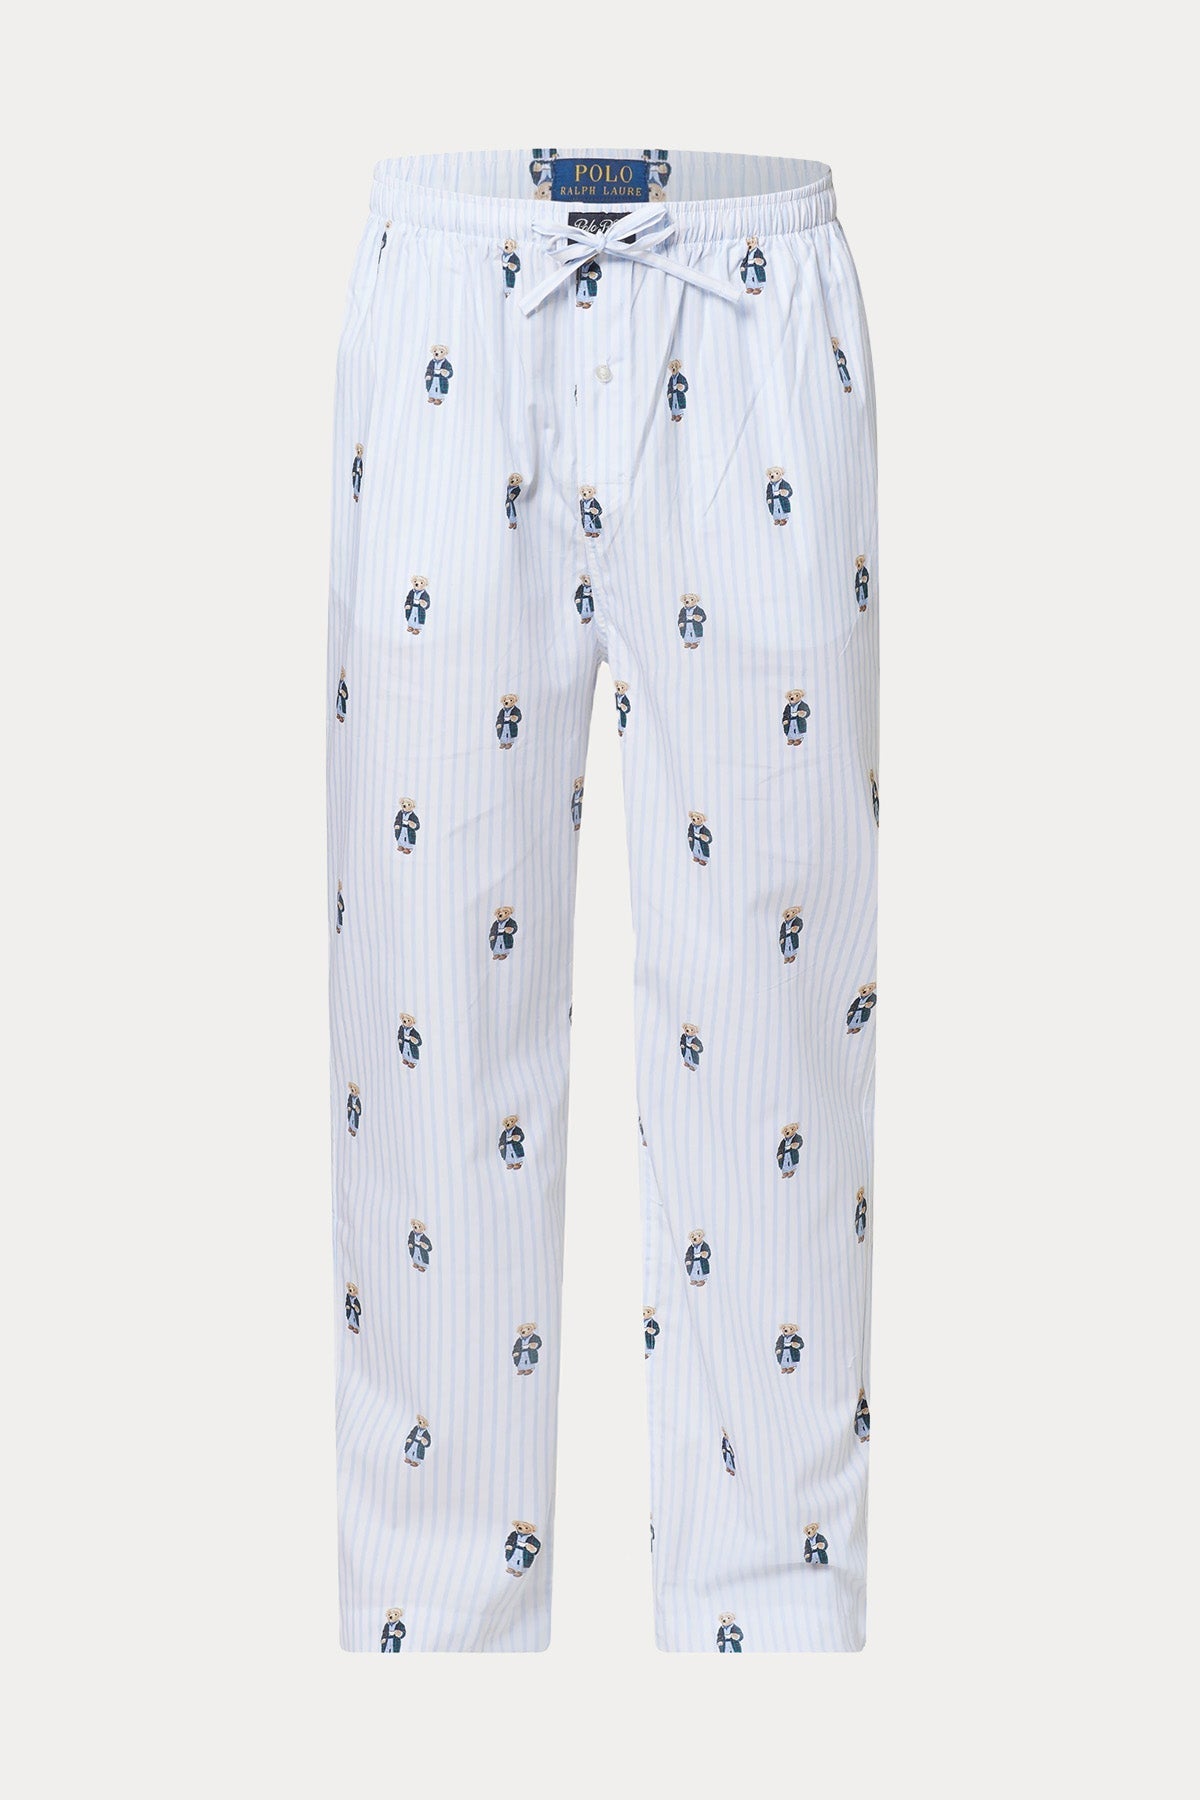 Polo Ralph Lauren Beli Lastikli Çizgili Polo Bear Pijama Altı